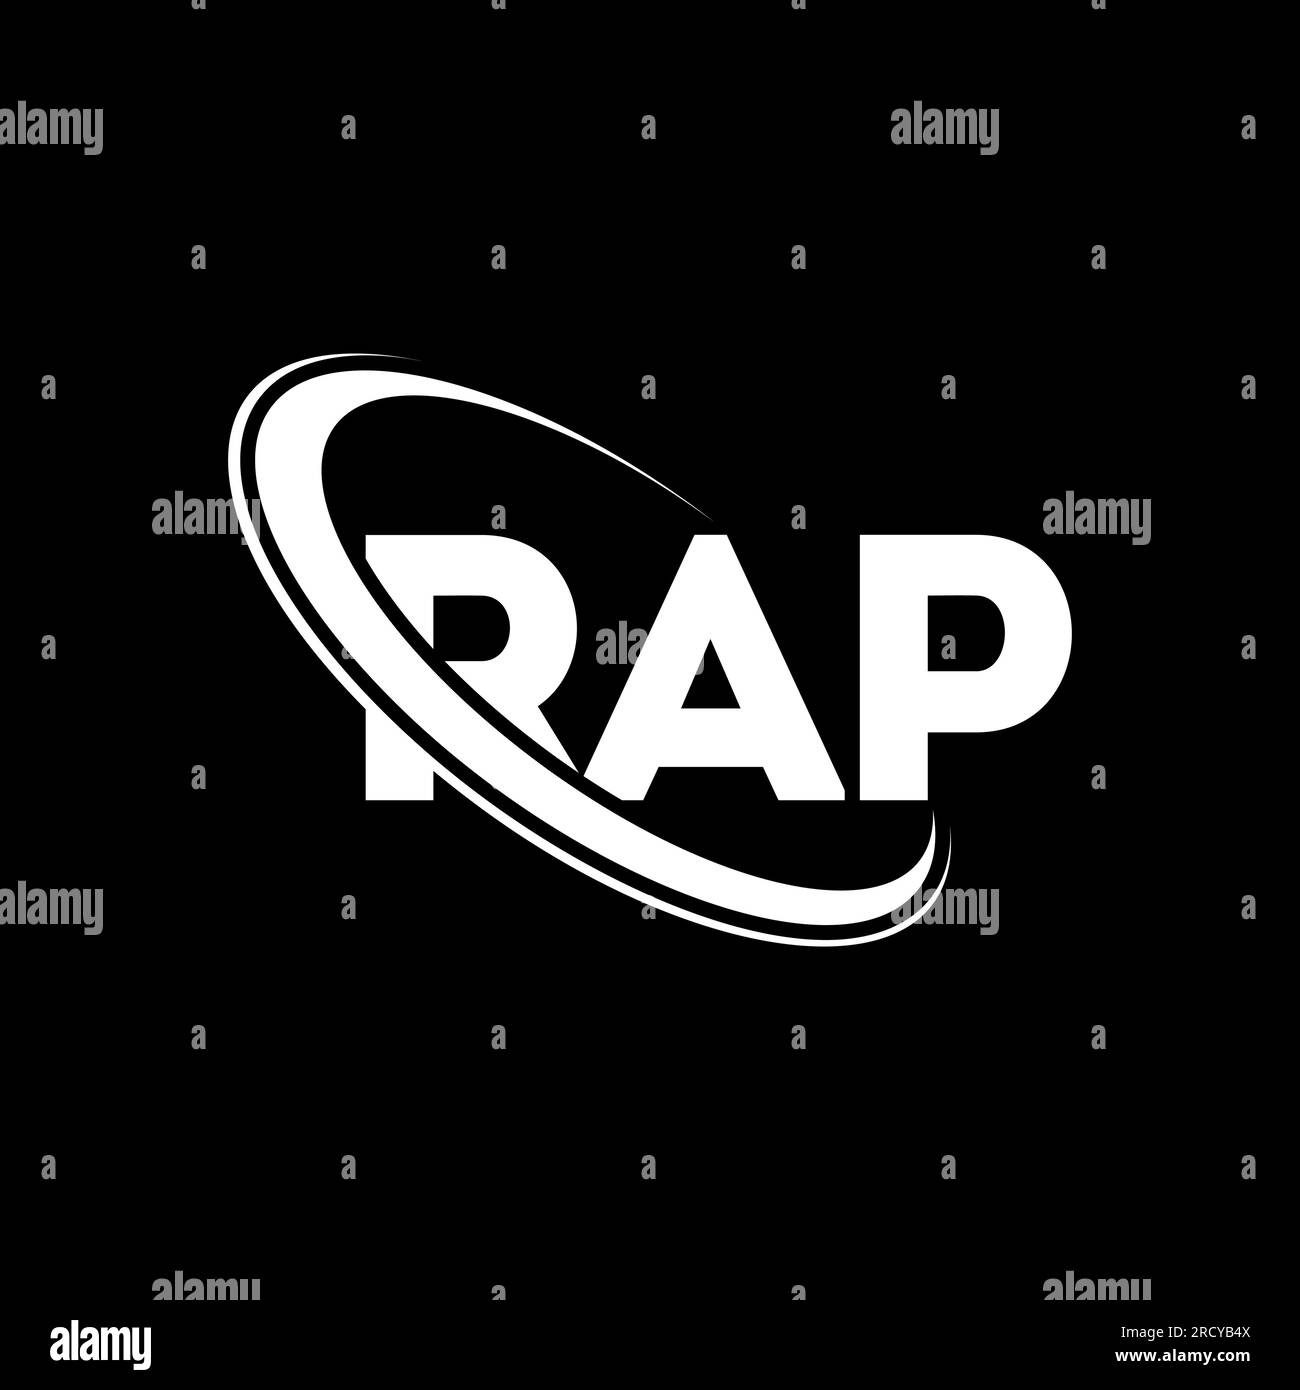 rapper logo ideas 2